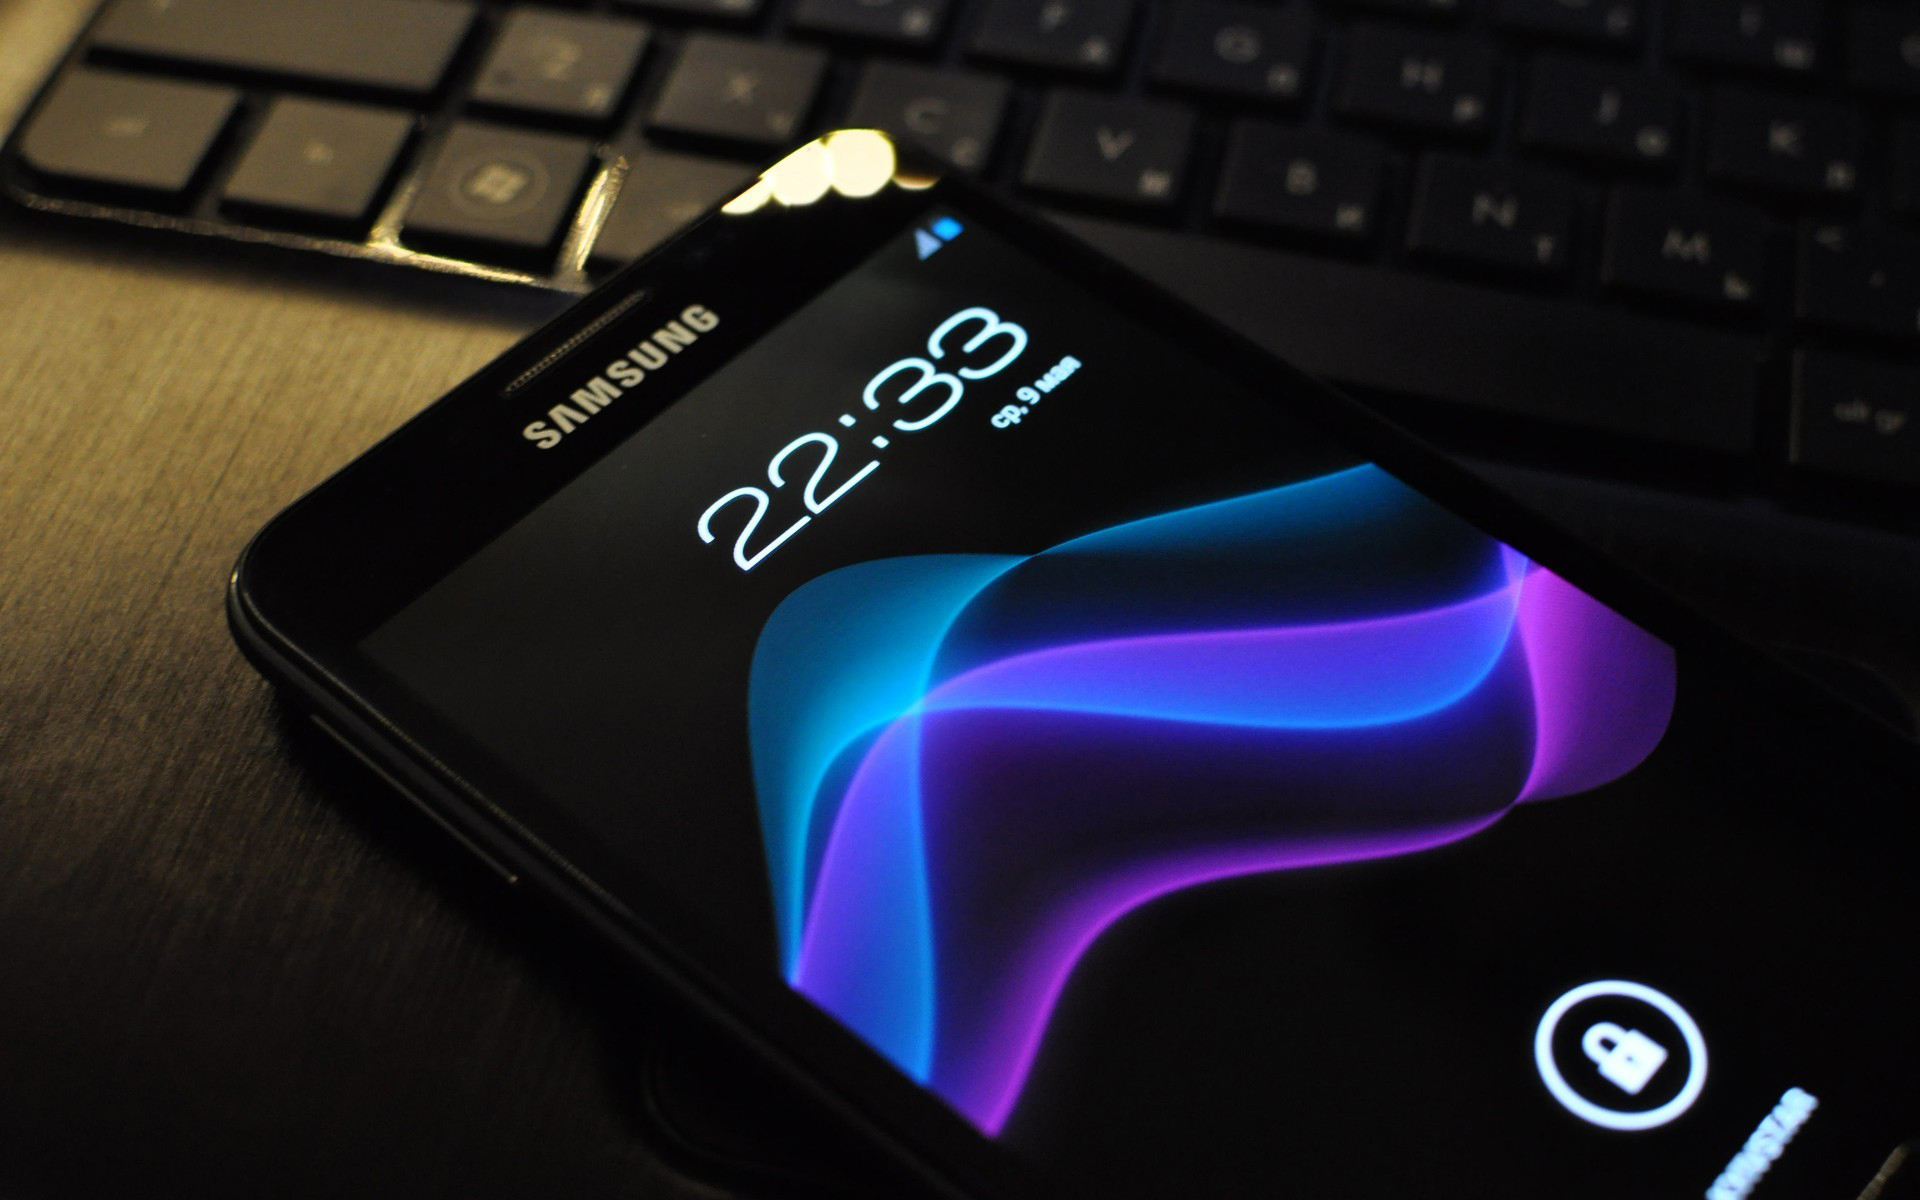 Melhores papéis de parede de Samsung para tela do telefone